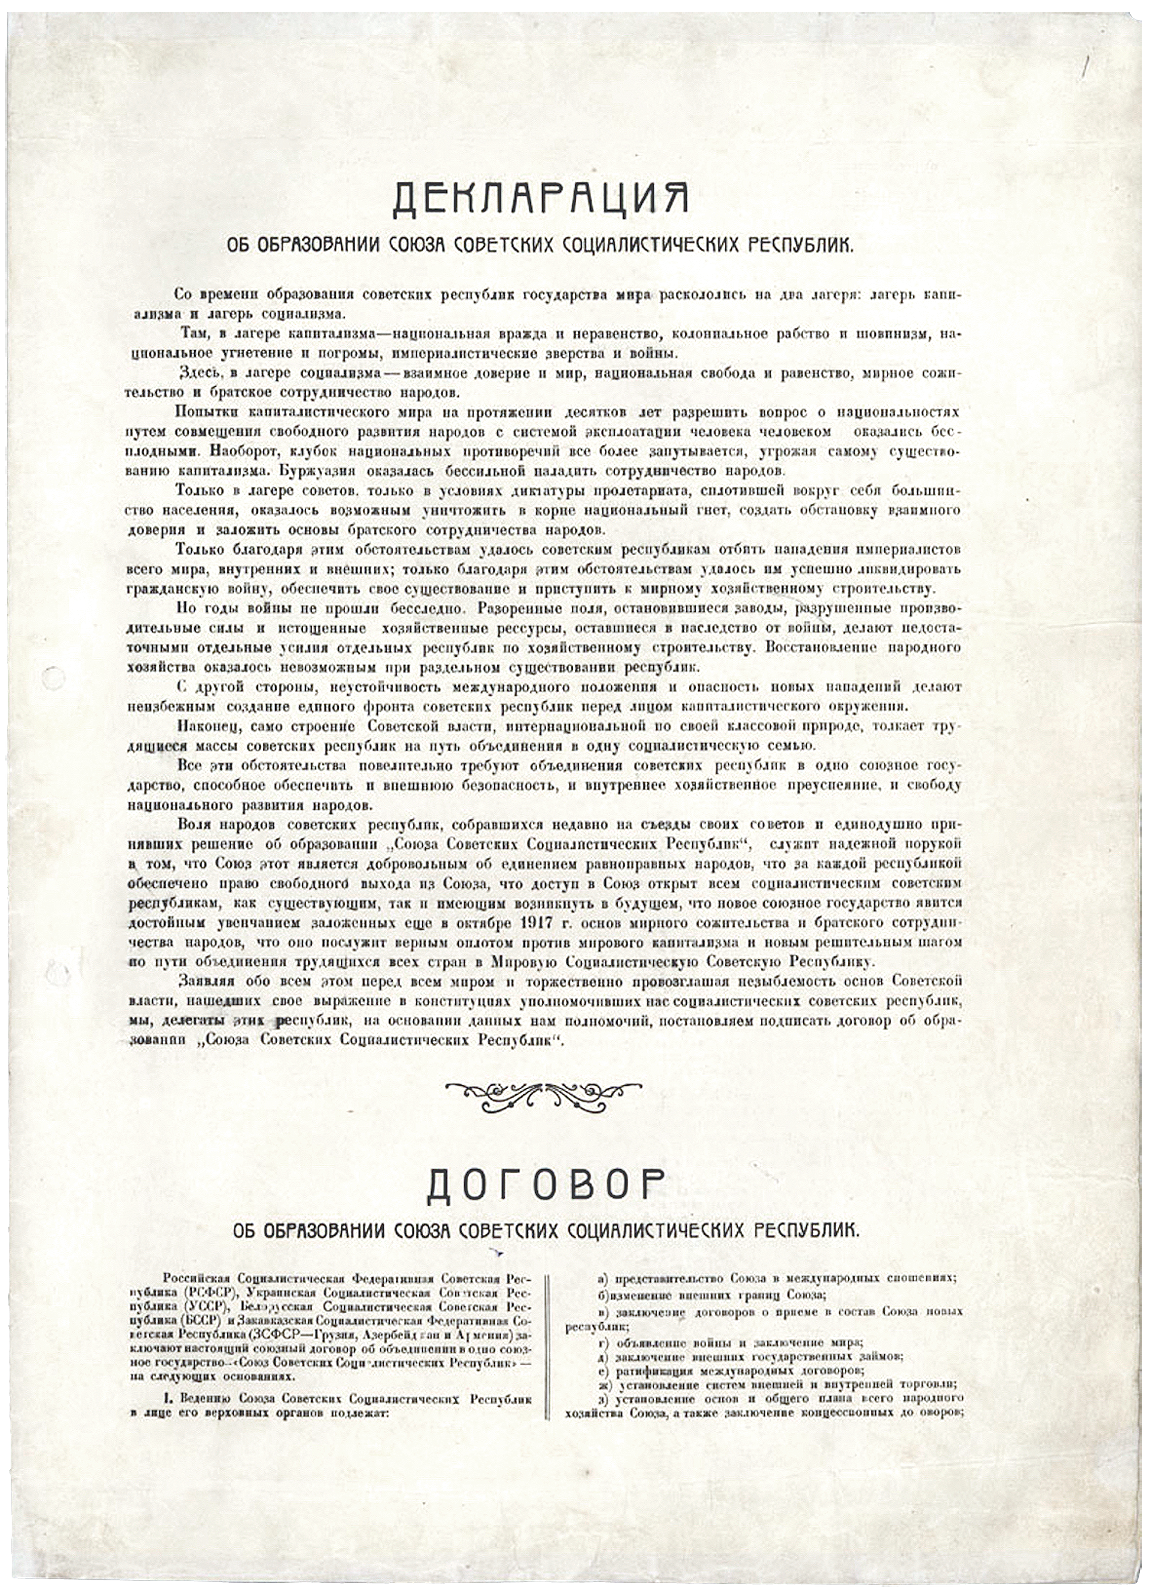 dogovor-ob-obrazovanii-soyuza-sovetskih-socialisticheskih-respublik-1922-1.png